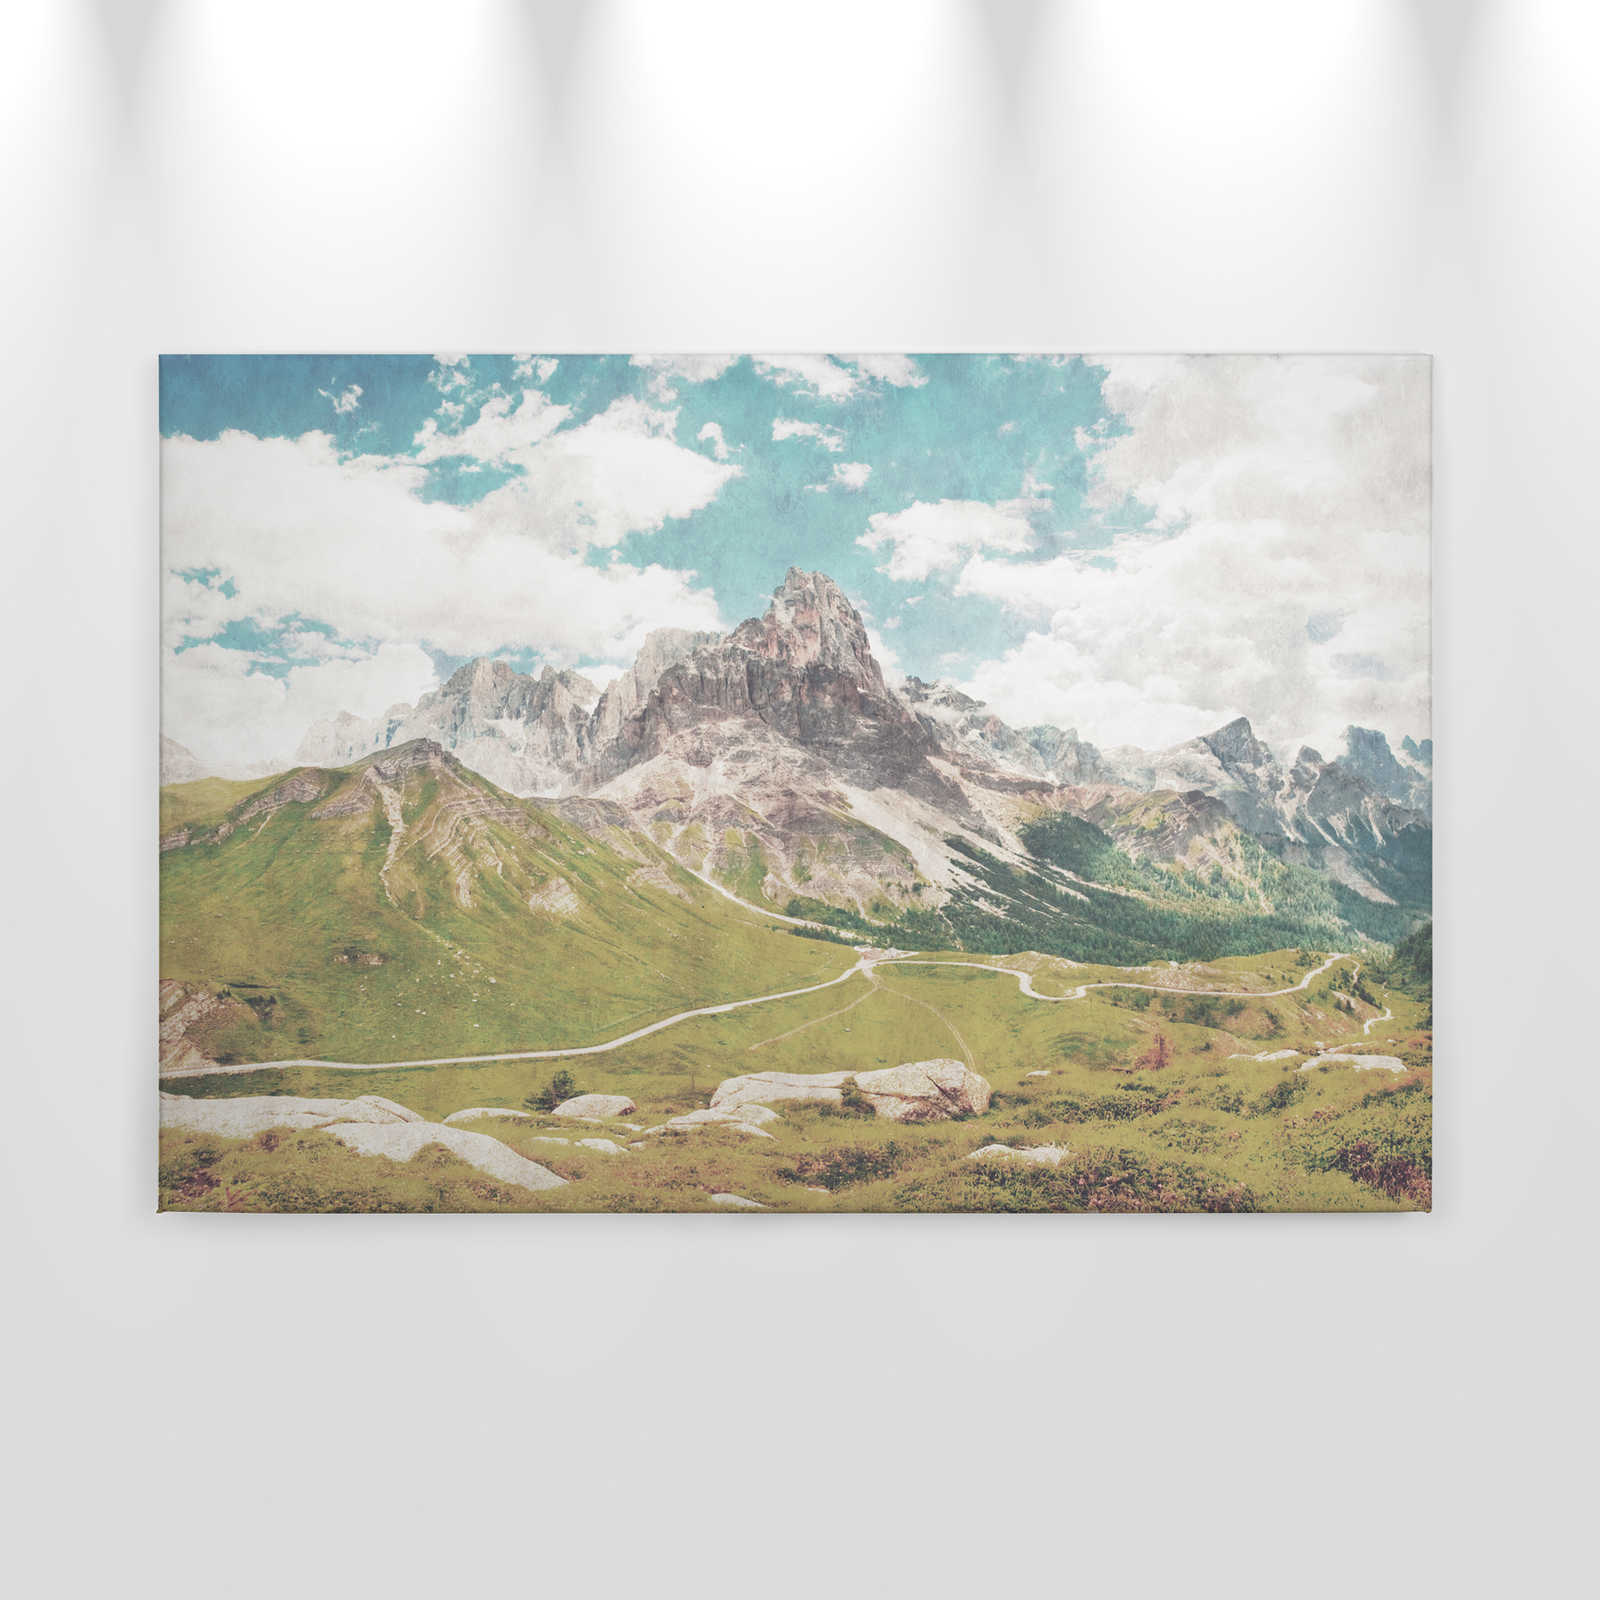             Dolomiti 2 - Quadro su tela Dolomiti retro fotografia con struttura in carta assorbente - 0,90 m x 0,60 m
        